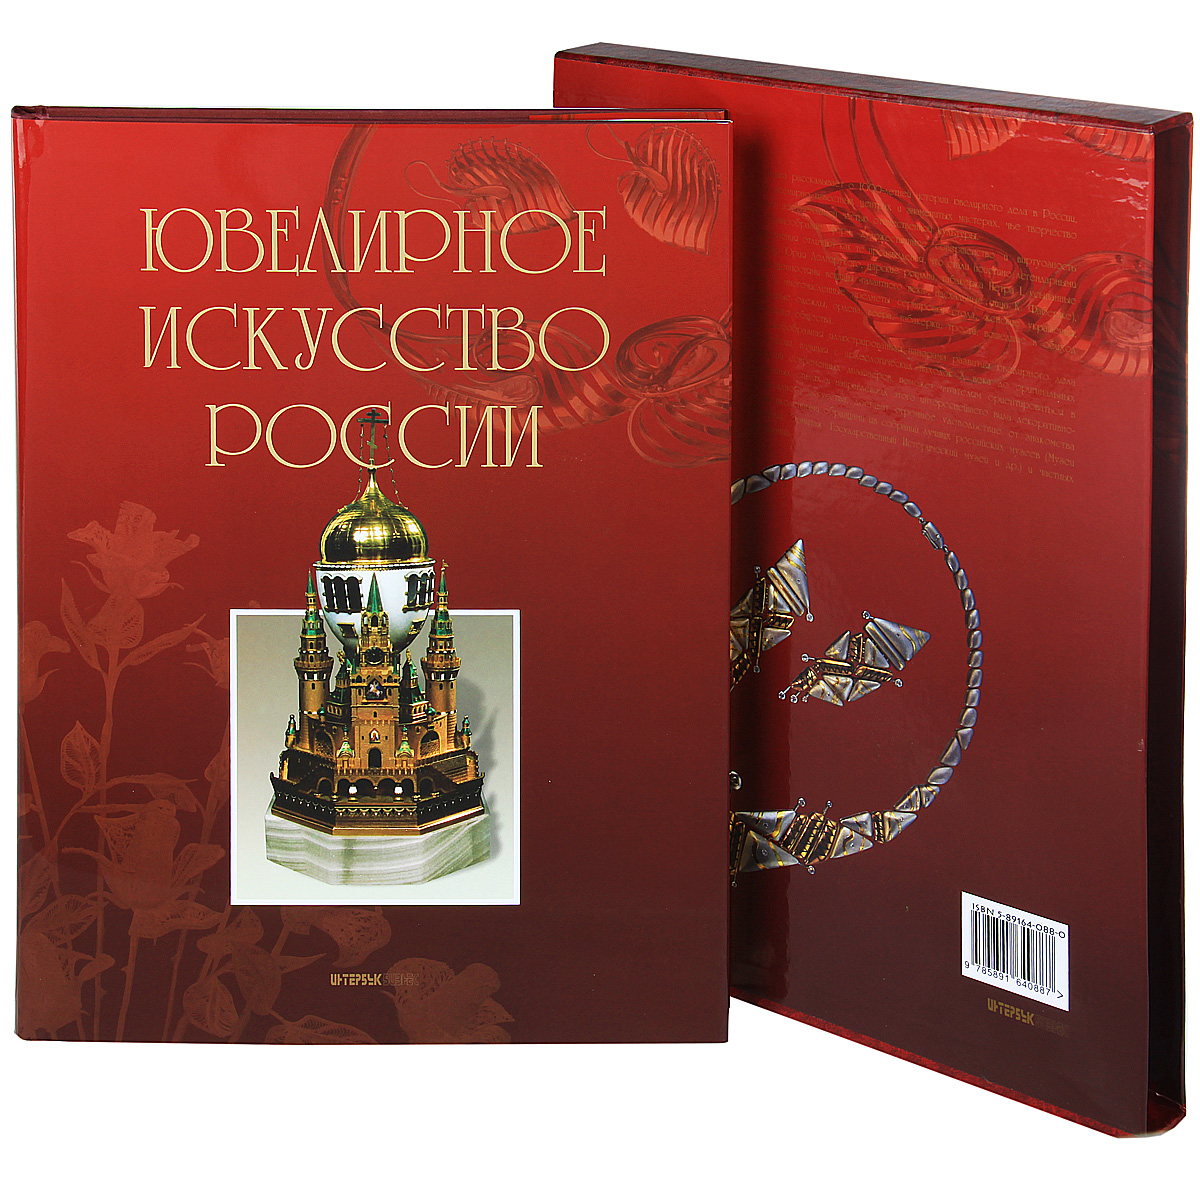 Ювелирное искусство России (подарочное издание)